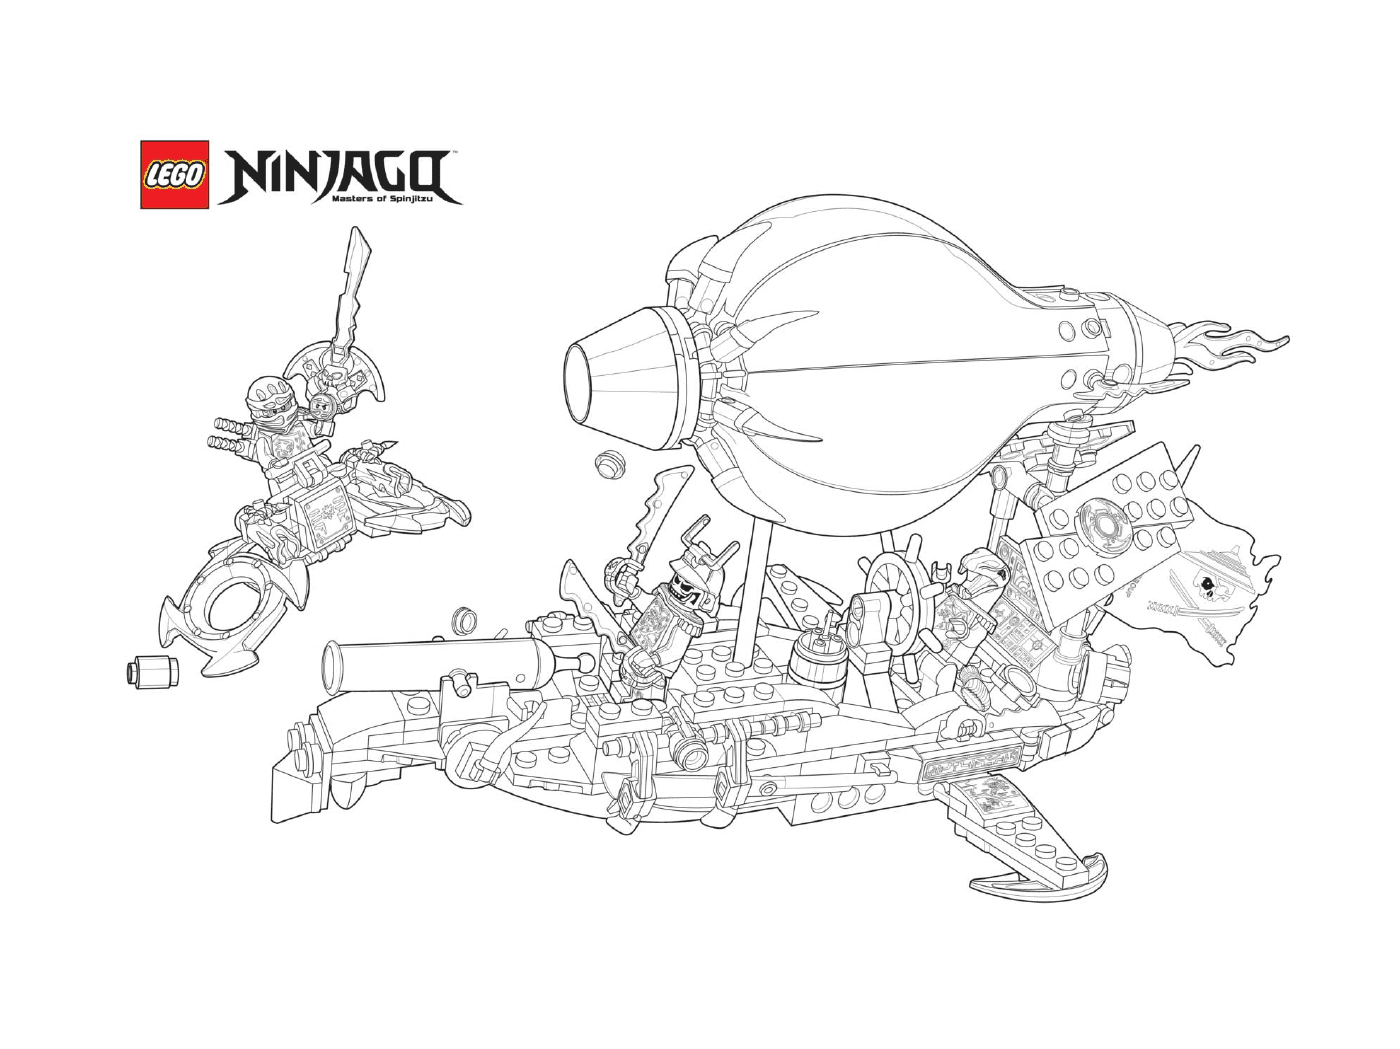  Ninjago contro nemici in barca 